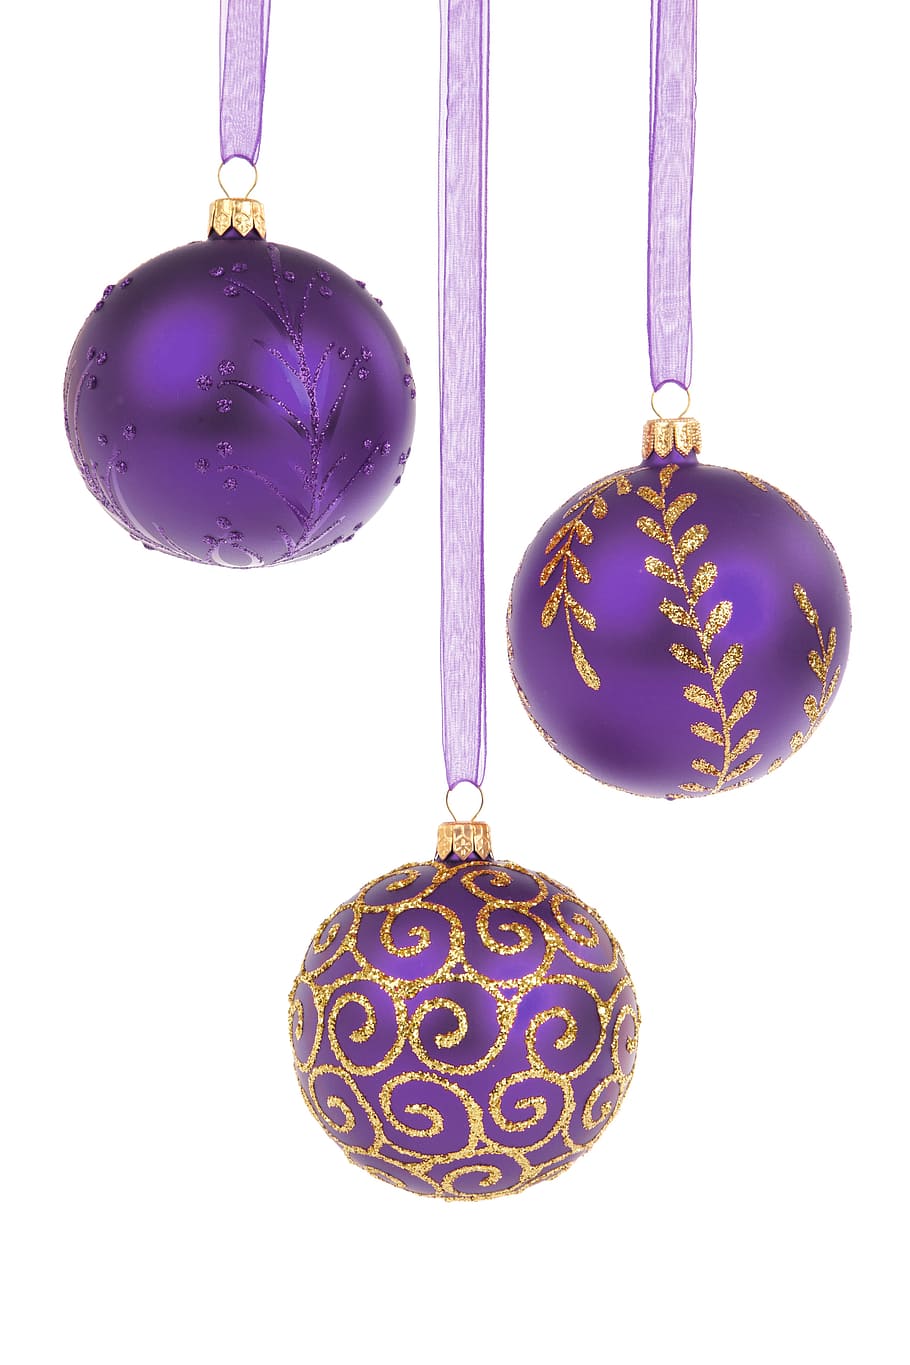 tiga pernak-pernik ungu, bola, perhiasan, perayaan, natal, desember, dekorasi, dekoratif, kaca, gantung